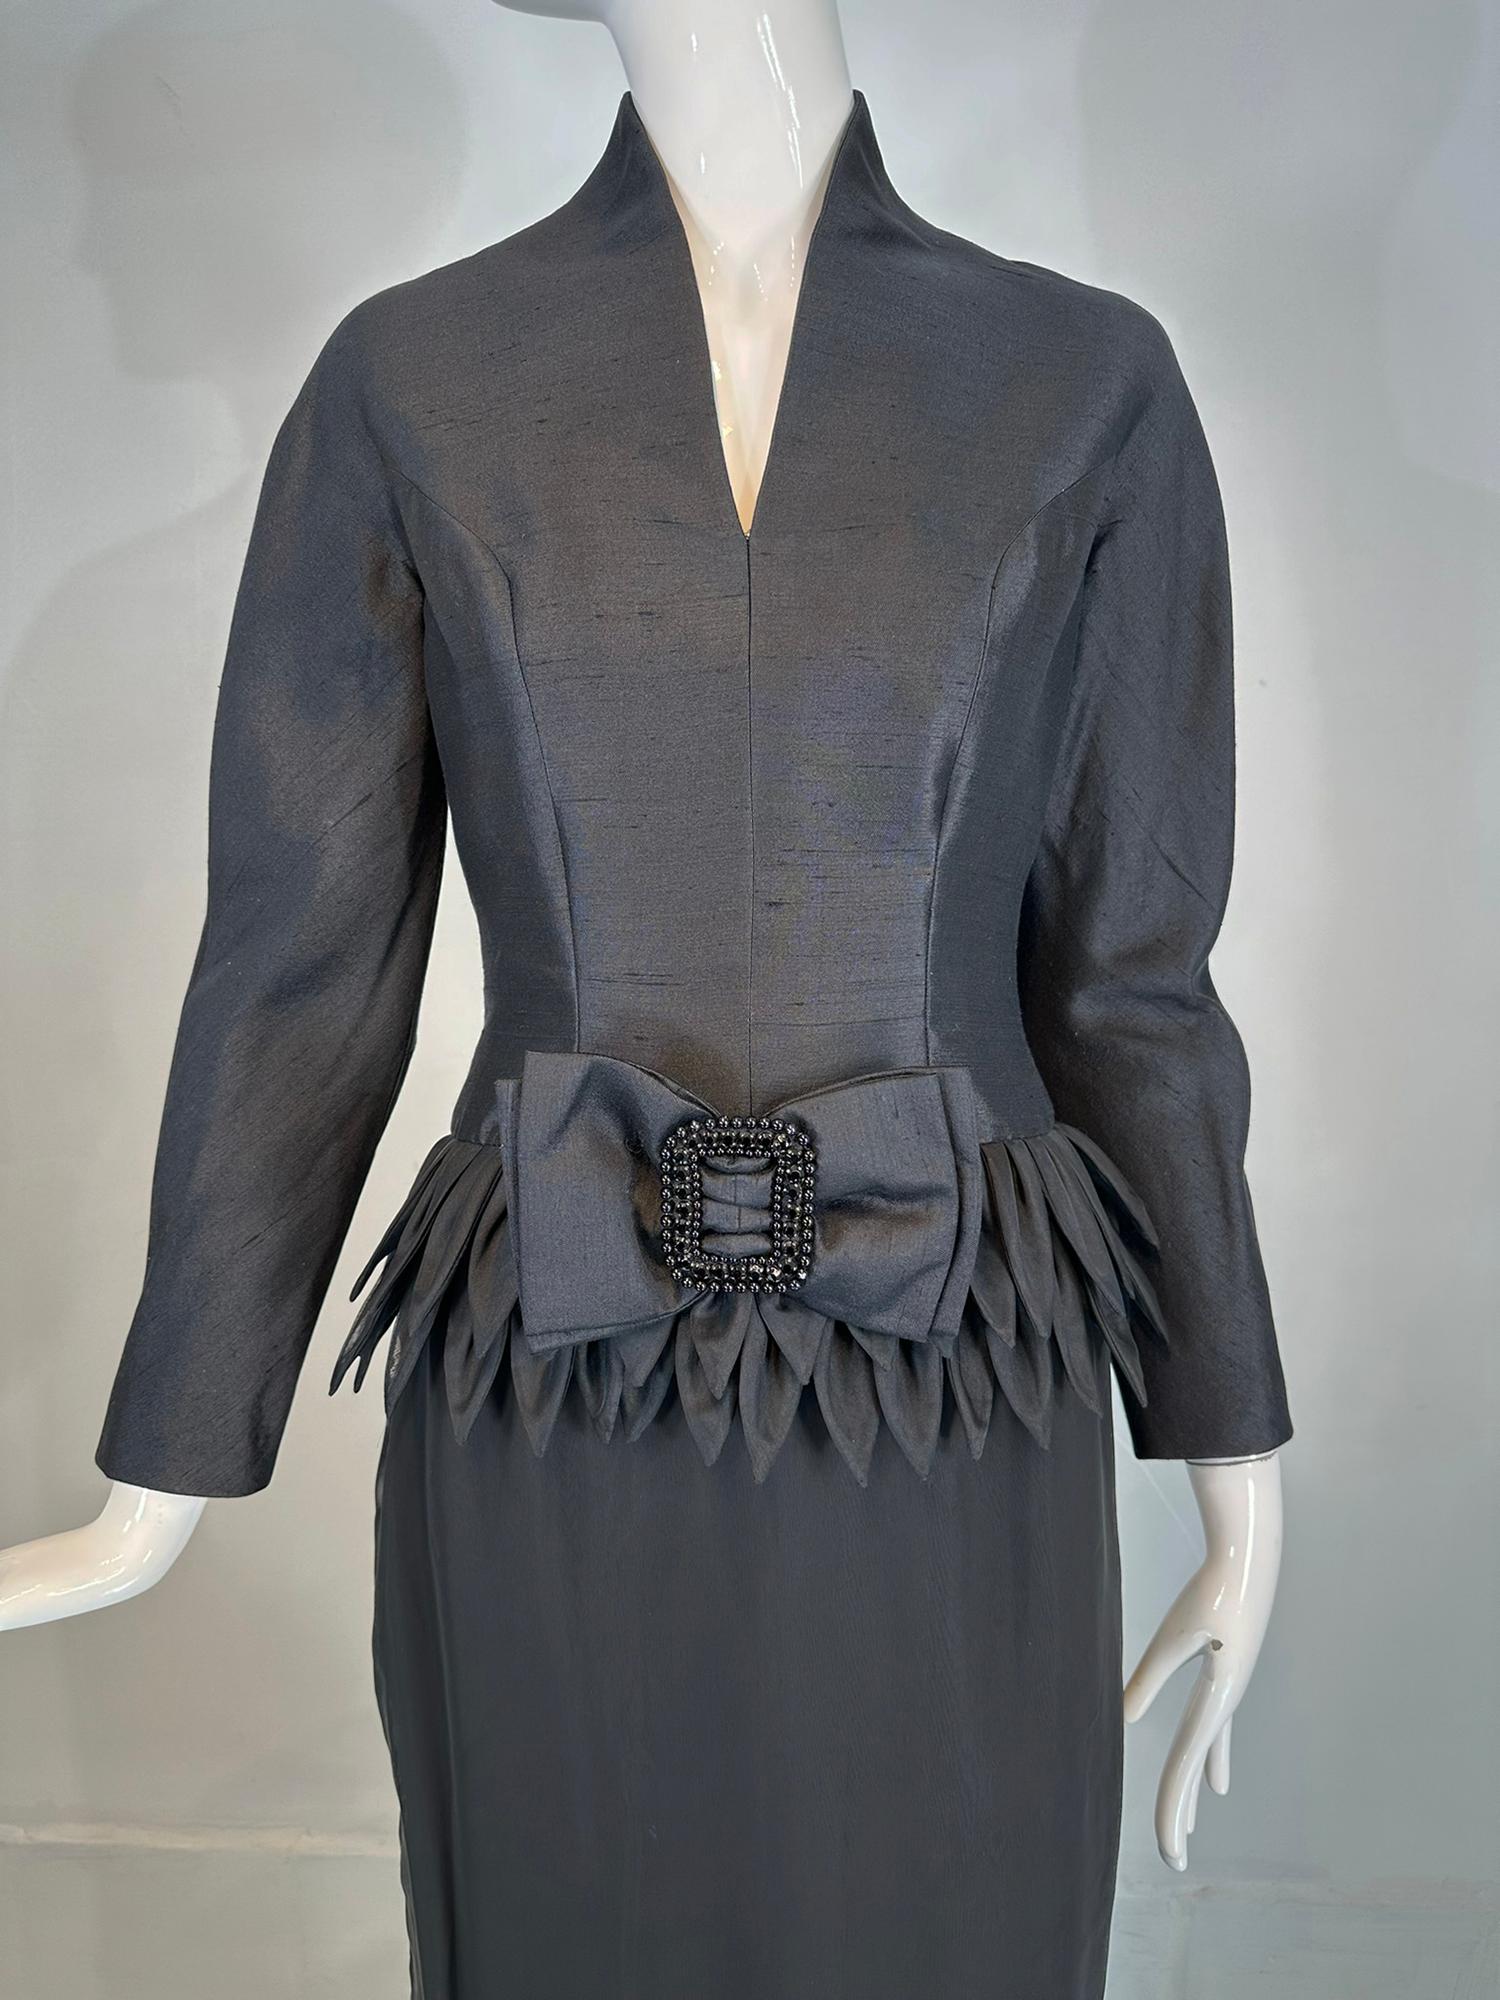 Robe de soirée en soie noire à pétales roulés à la main, datant des années 1960, Hong Kong, Vinchi Demi Couture. Hong Kong a toujours été un haut lieu de la confection à la main. Connue dans les années 50 et 60 pour ses extravagances perlées de